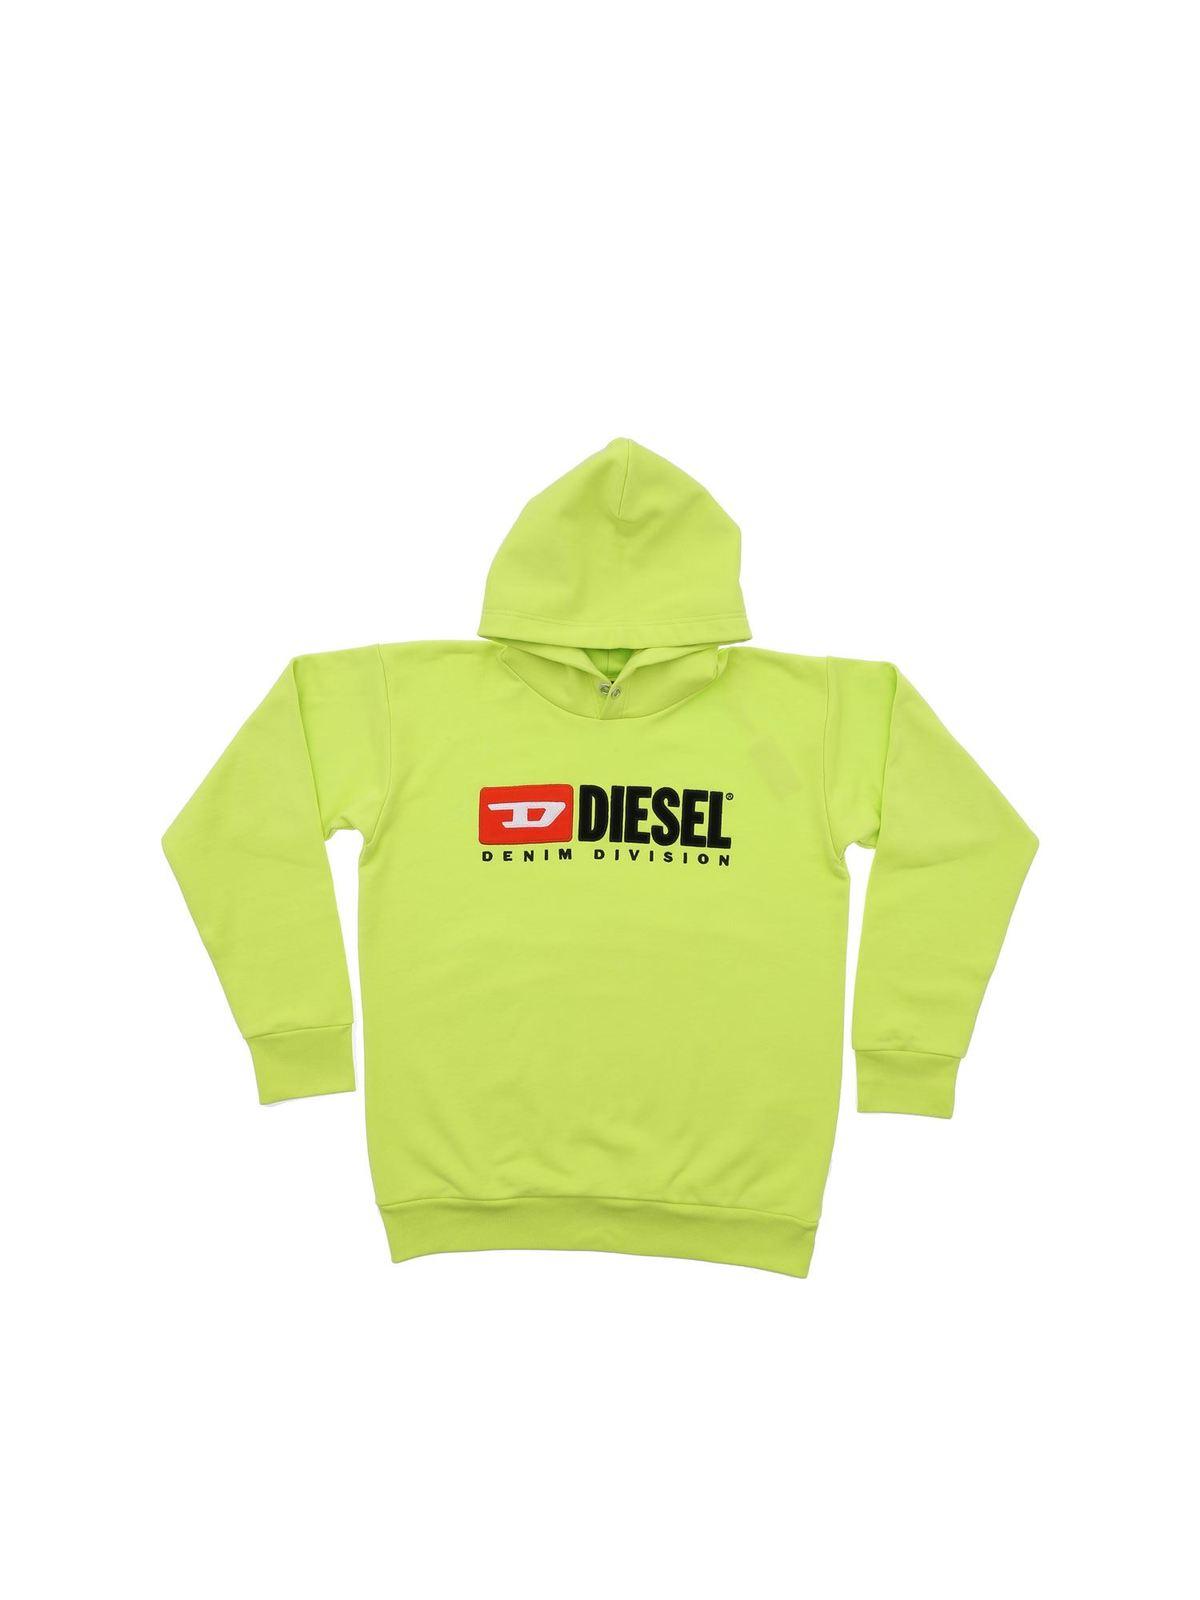 Diesel Neon Hoodie Best Sale, SAVE 59% - raptorunderlayment.com